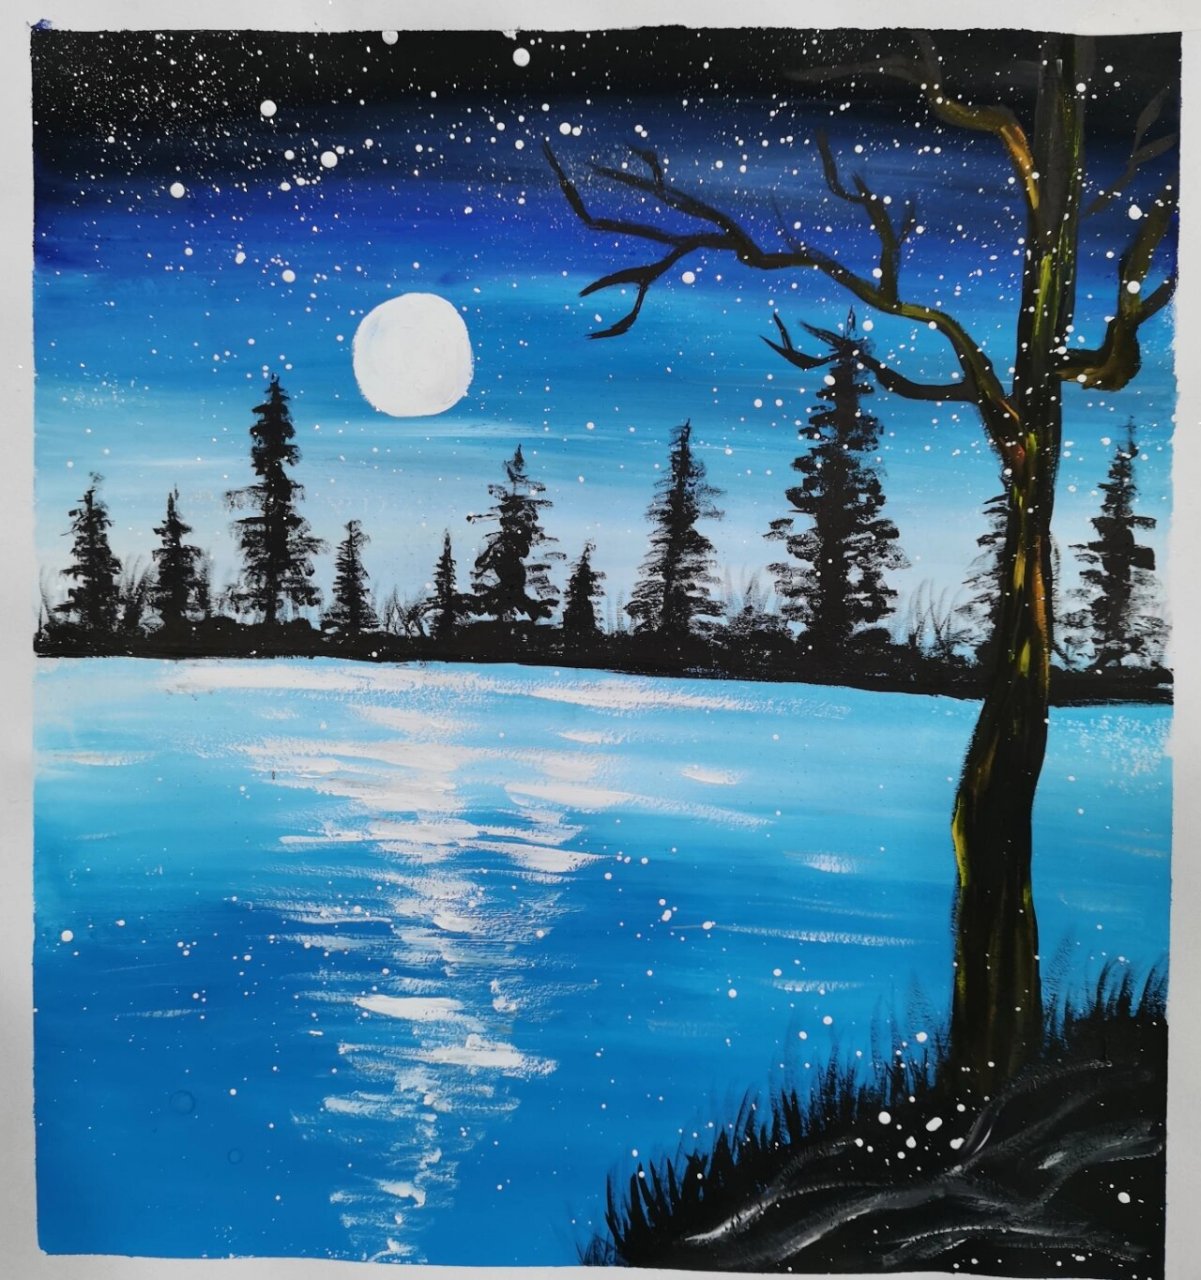 冷色系水粉画 冷色系水粉画《月光下的老树》 物体的颜色与周围的环境